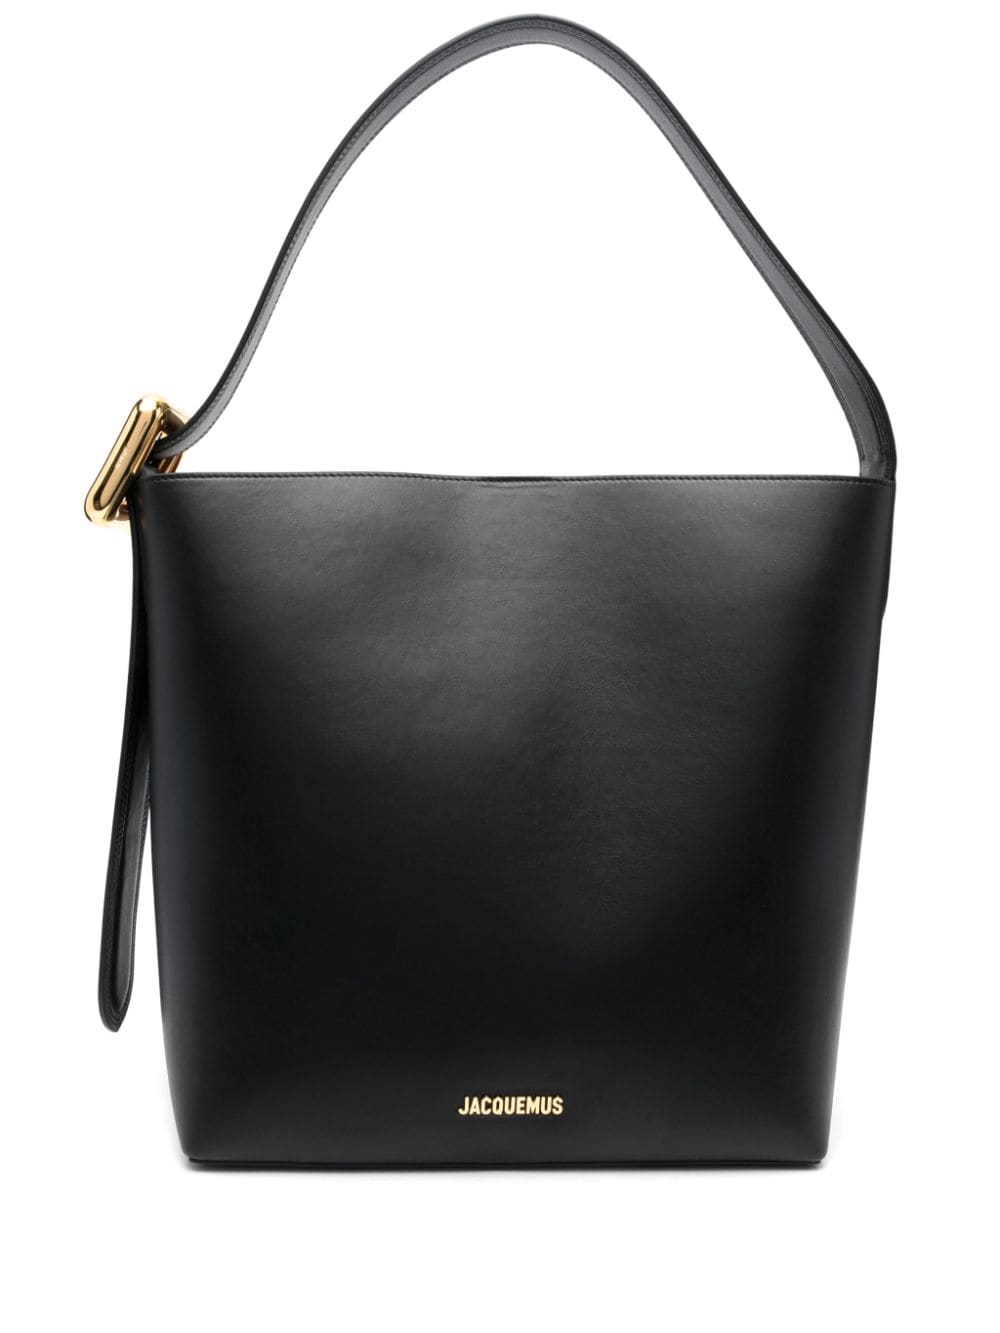 Jacquemus Le Regalo leather bucket bag - Black von Jacquemus